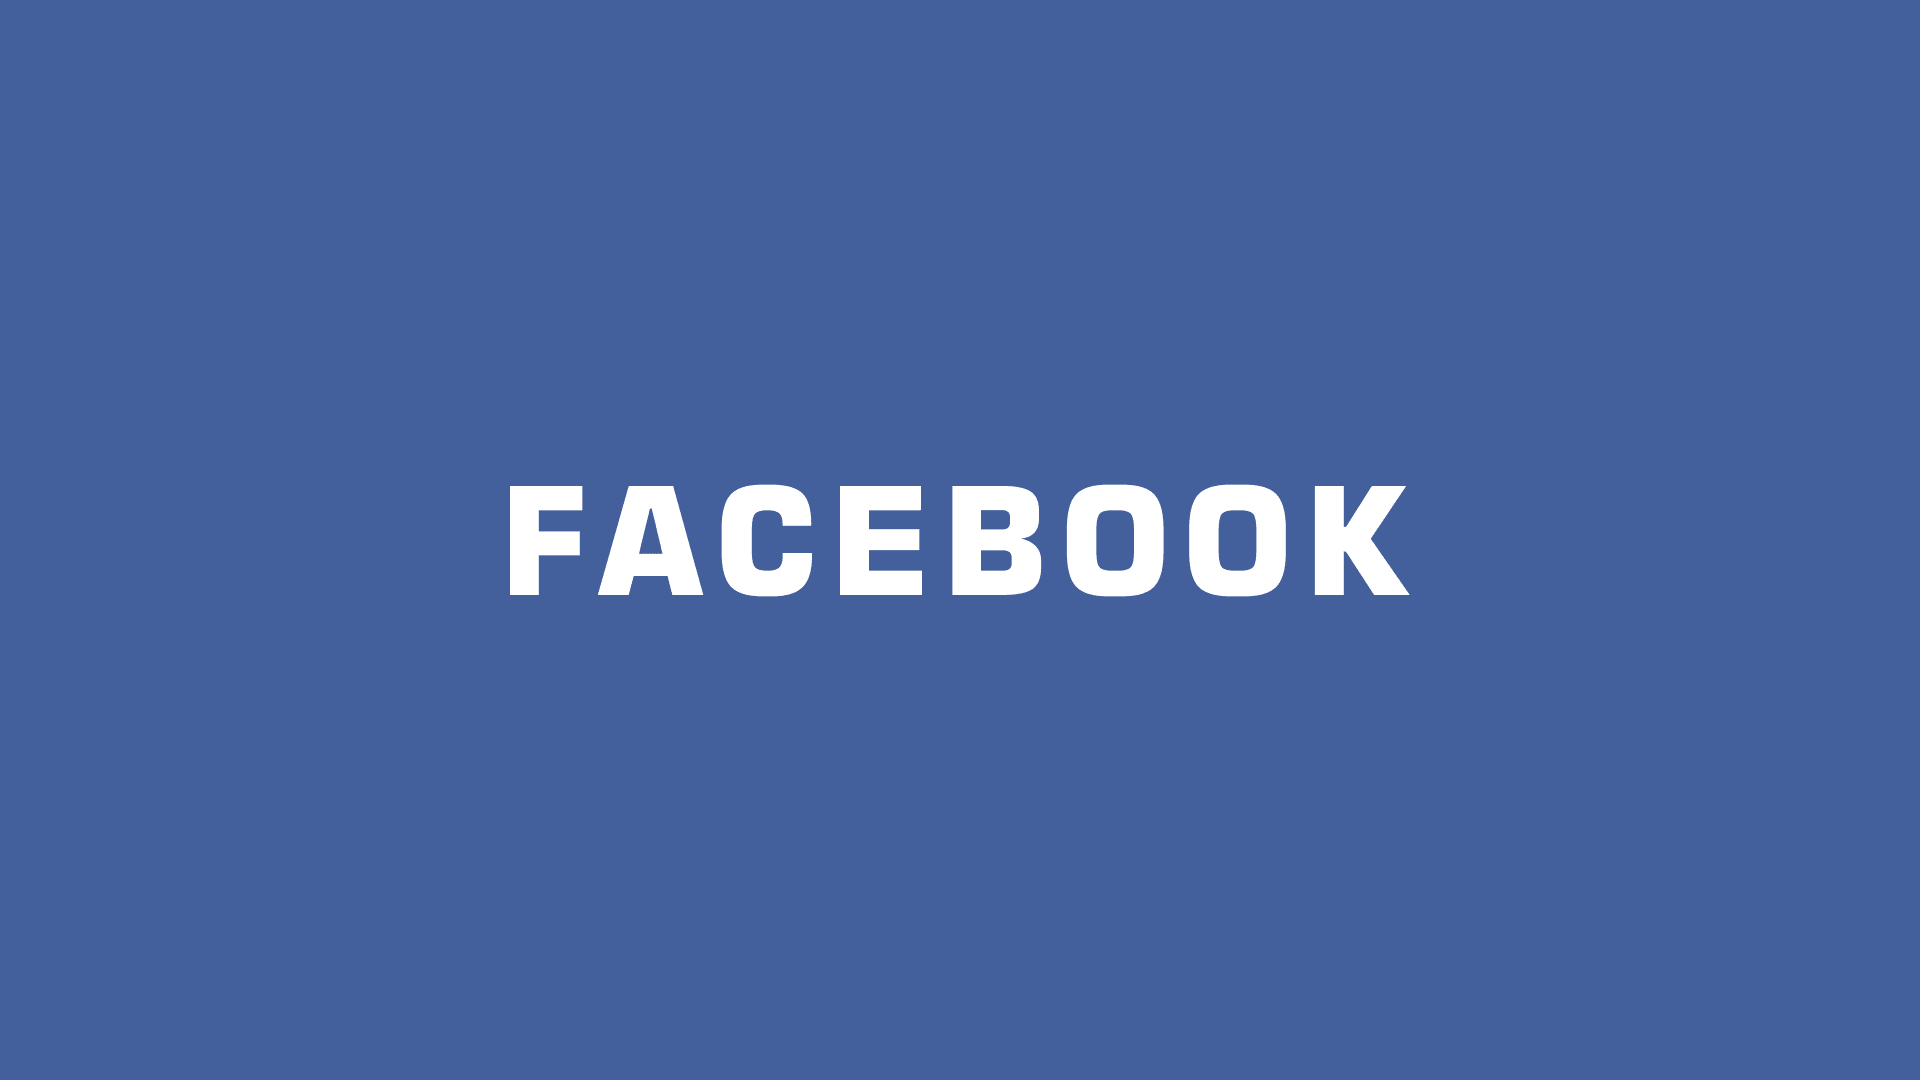 臉書 Facebook 網誌編輯服務會是破壞部落格生態殺手鐧嗎？